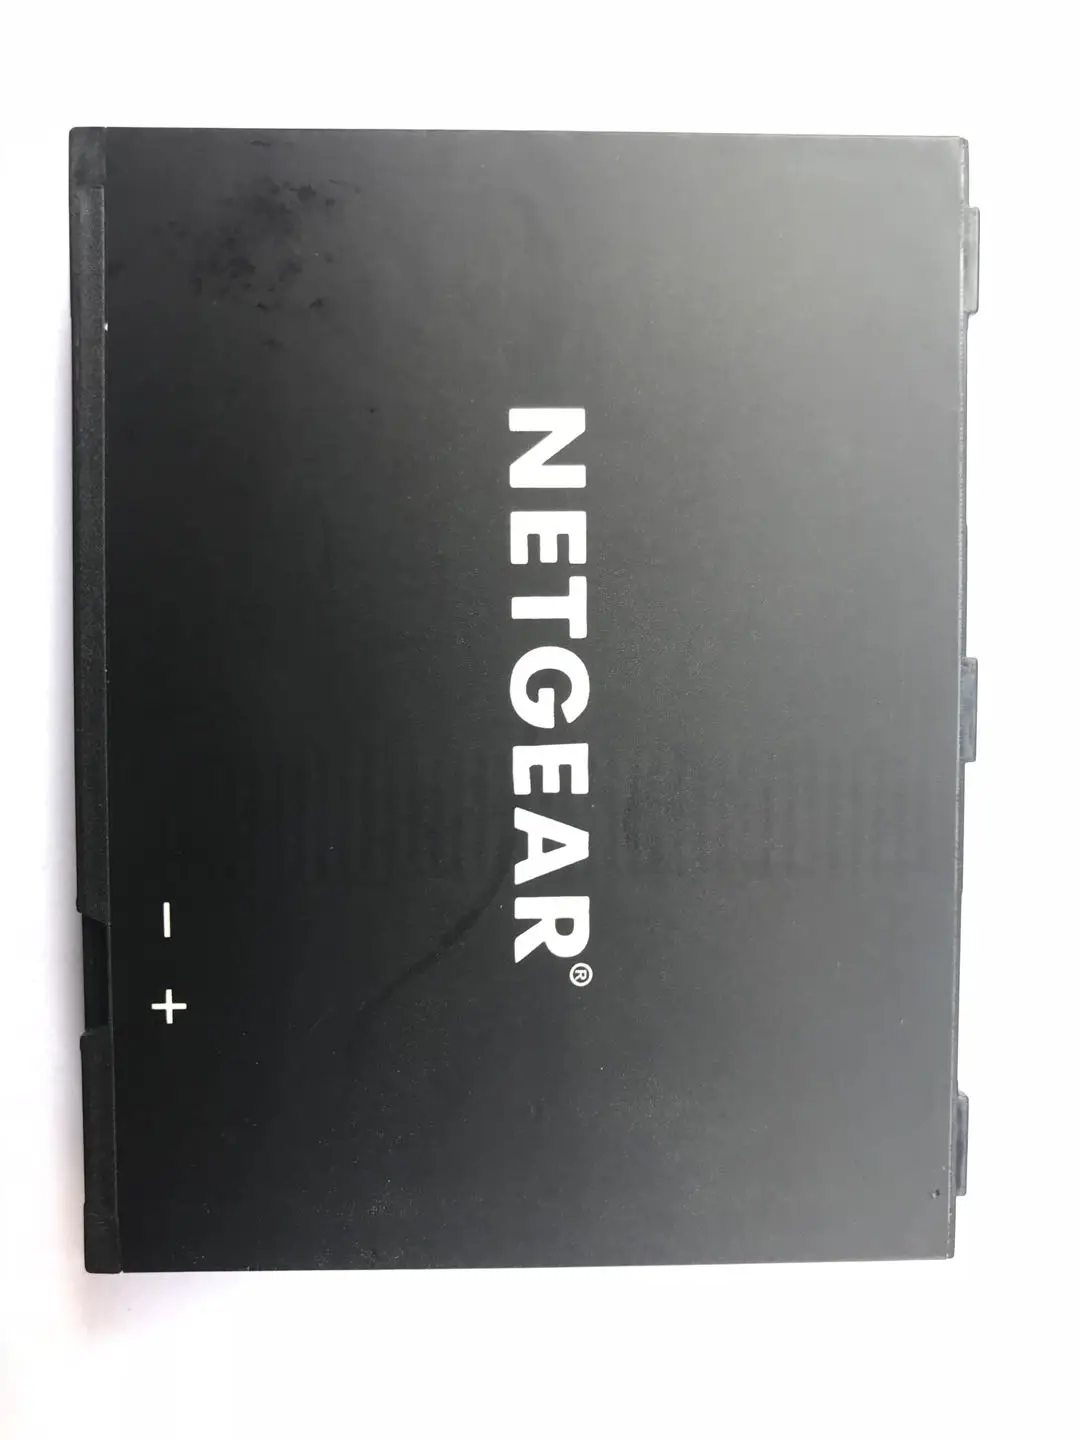 5040 mAh/19,76wh 3,8 V W10 W-10 запасная батарея для NETGEAR NightHawk M1 MR1100 батарея